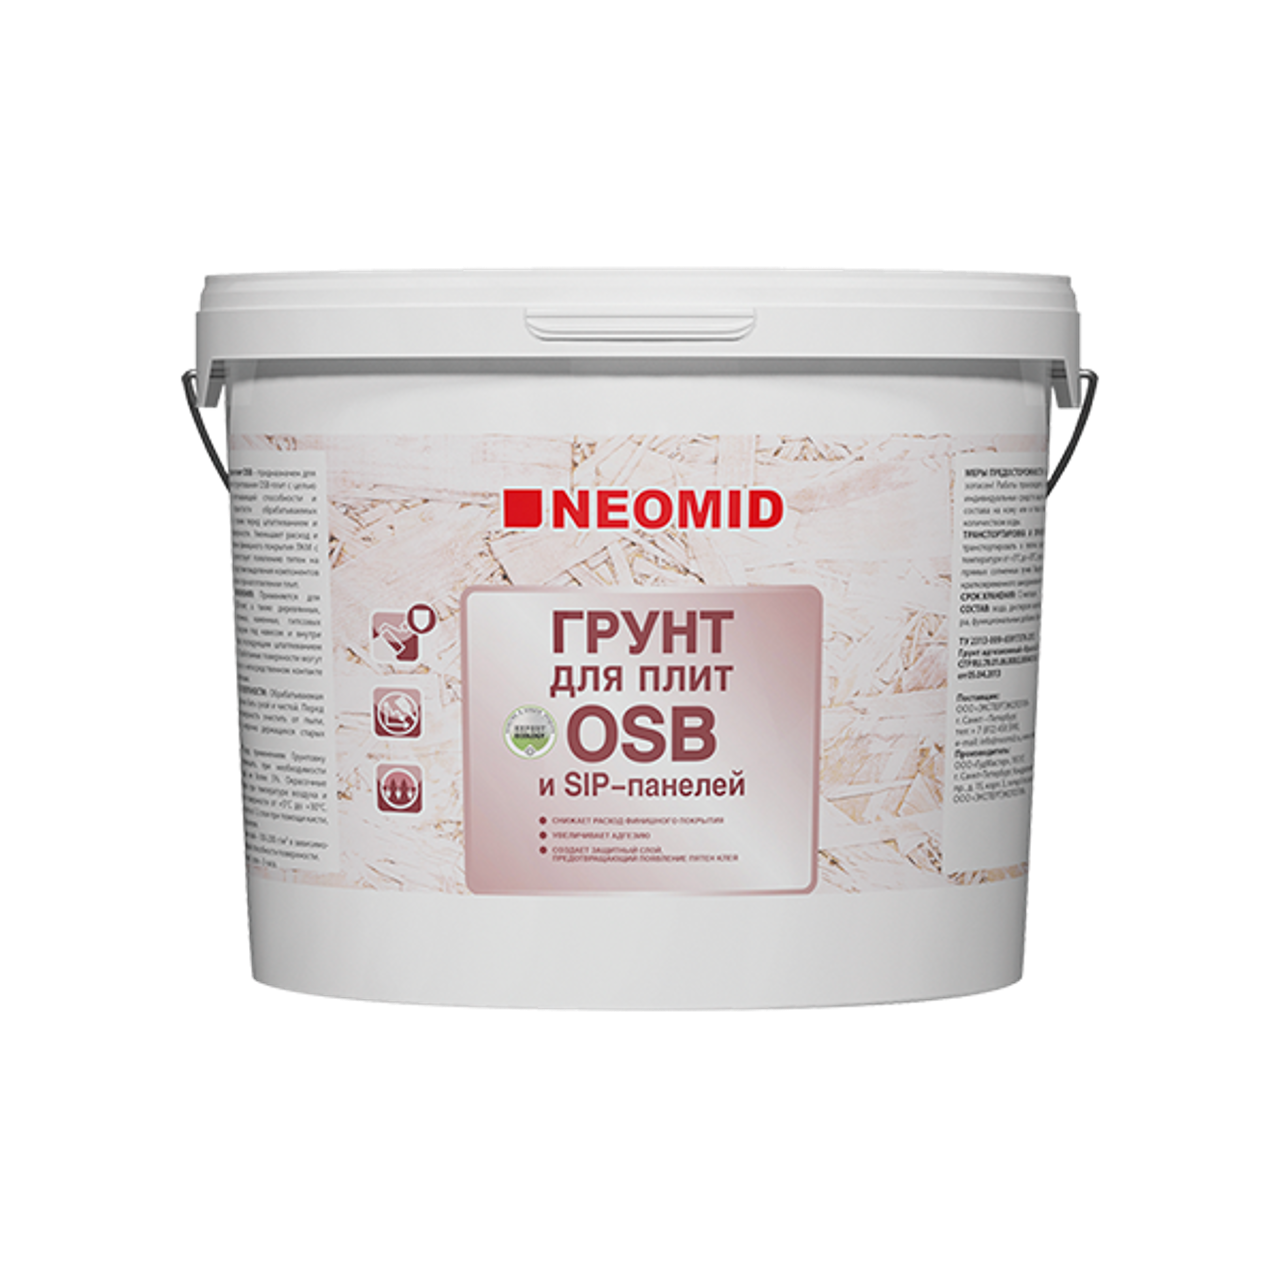 Neomid для плит osb. Грунт NEOMID для плит OSB 7кг. Грунтовка для плит ОСБ Неомид-7. NEOMID грунт для OSB плит. Краска-грунт для плит OSB // 1кг // NEOMID.